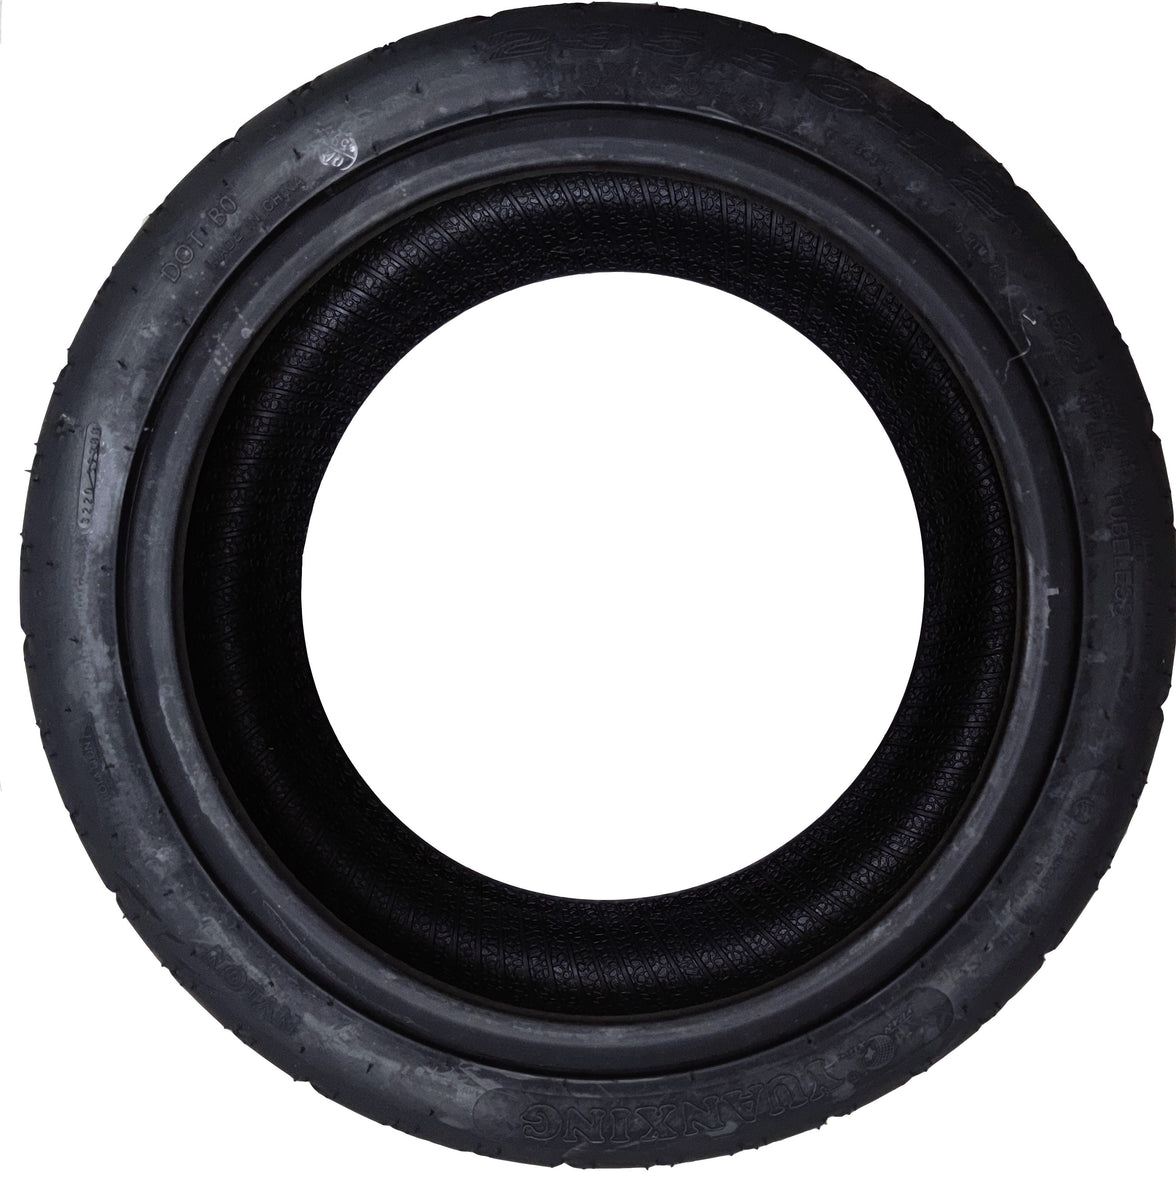 Valve coudée pour pneu Tubeless (chrome), Pièces Mini Citycoco, Pneumatique,  description